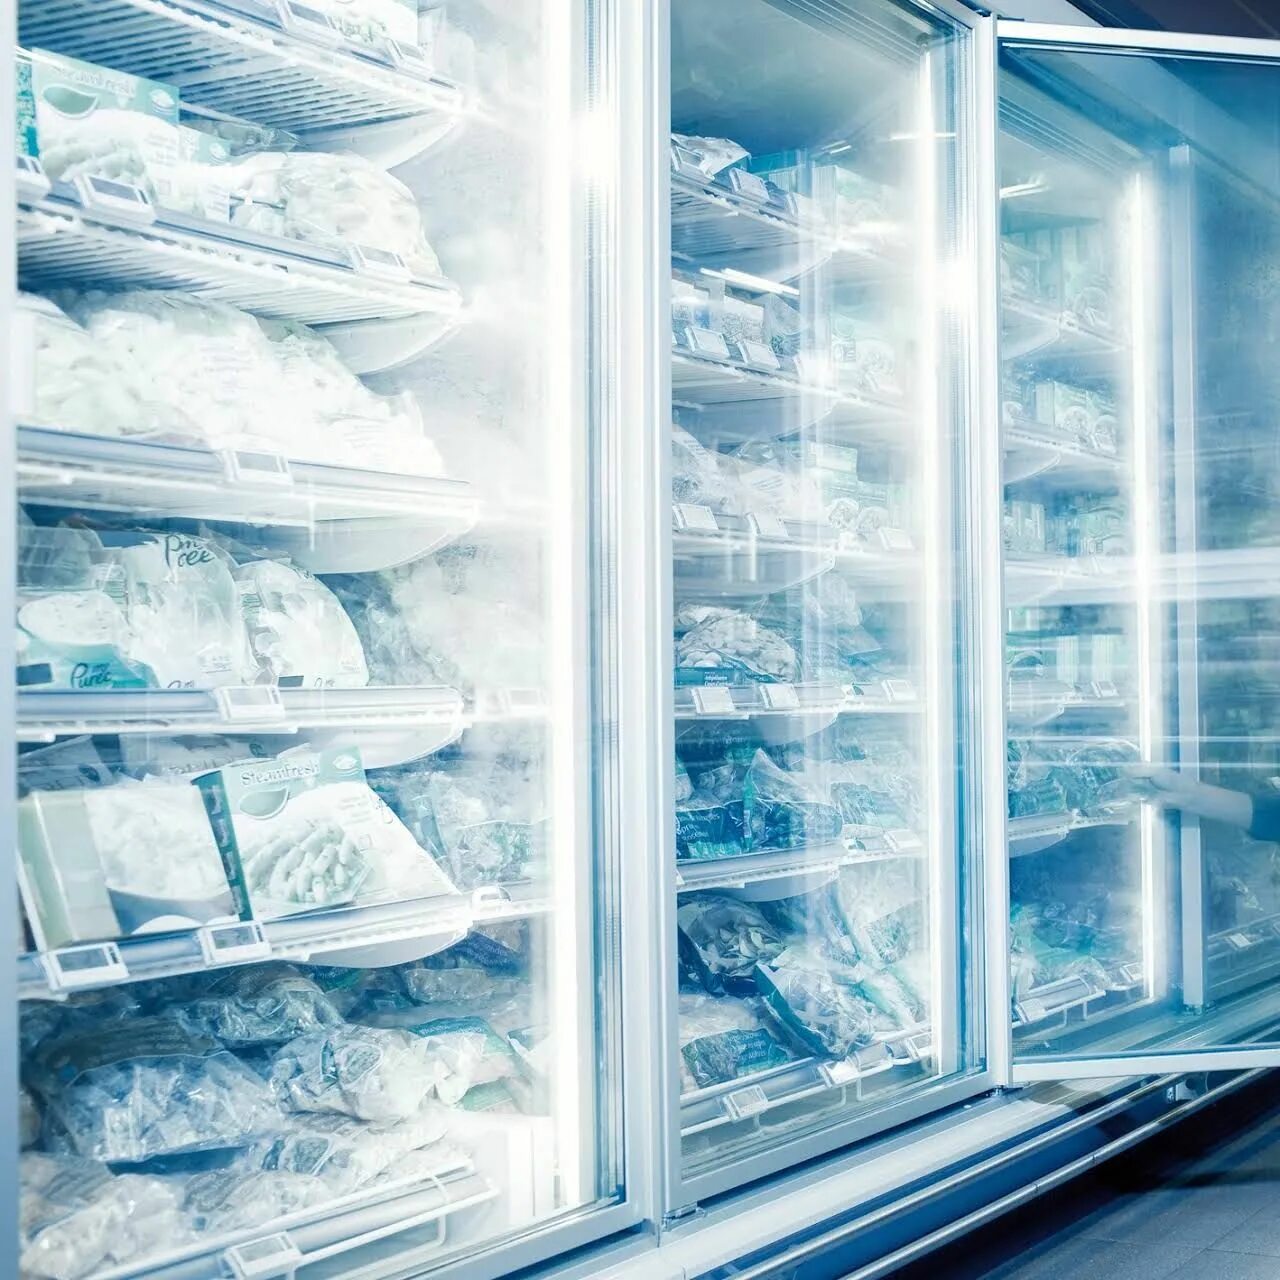 Морозильный ларь в интерьере. Супермаркет заморозка. Холодильник 3 System. Холодильник в супермаркете.